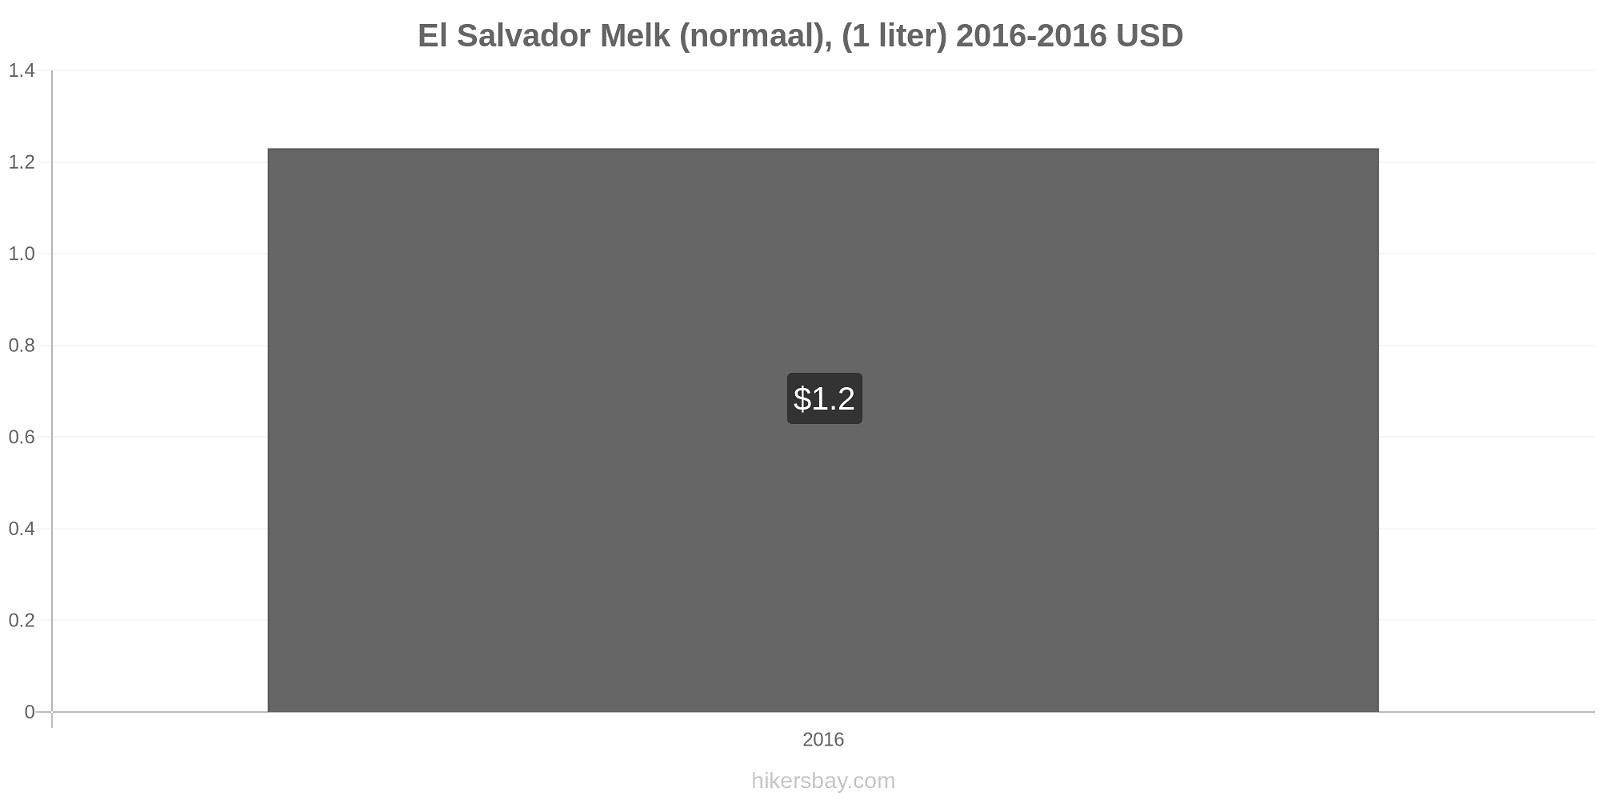 El Salvador prijswijzigingen Melk (regelmatige), (1 liter) hikersbay.com